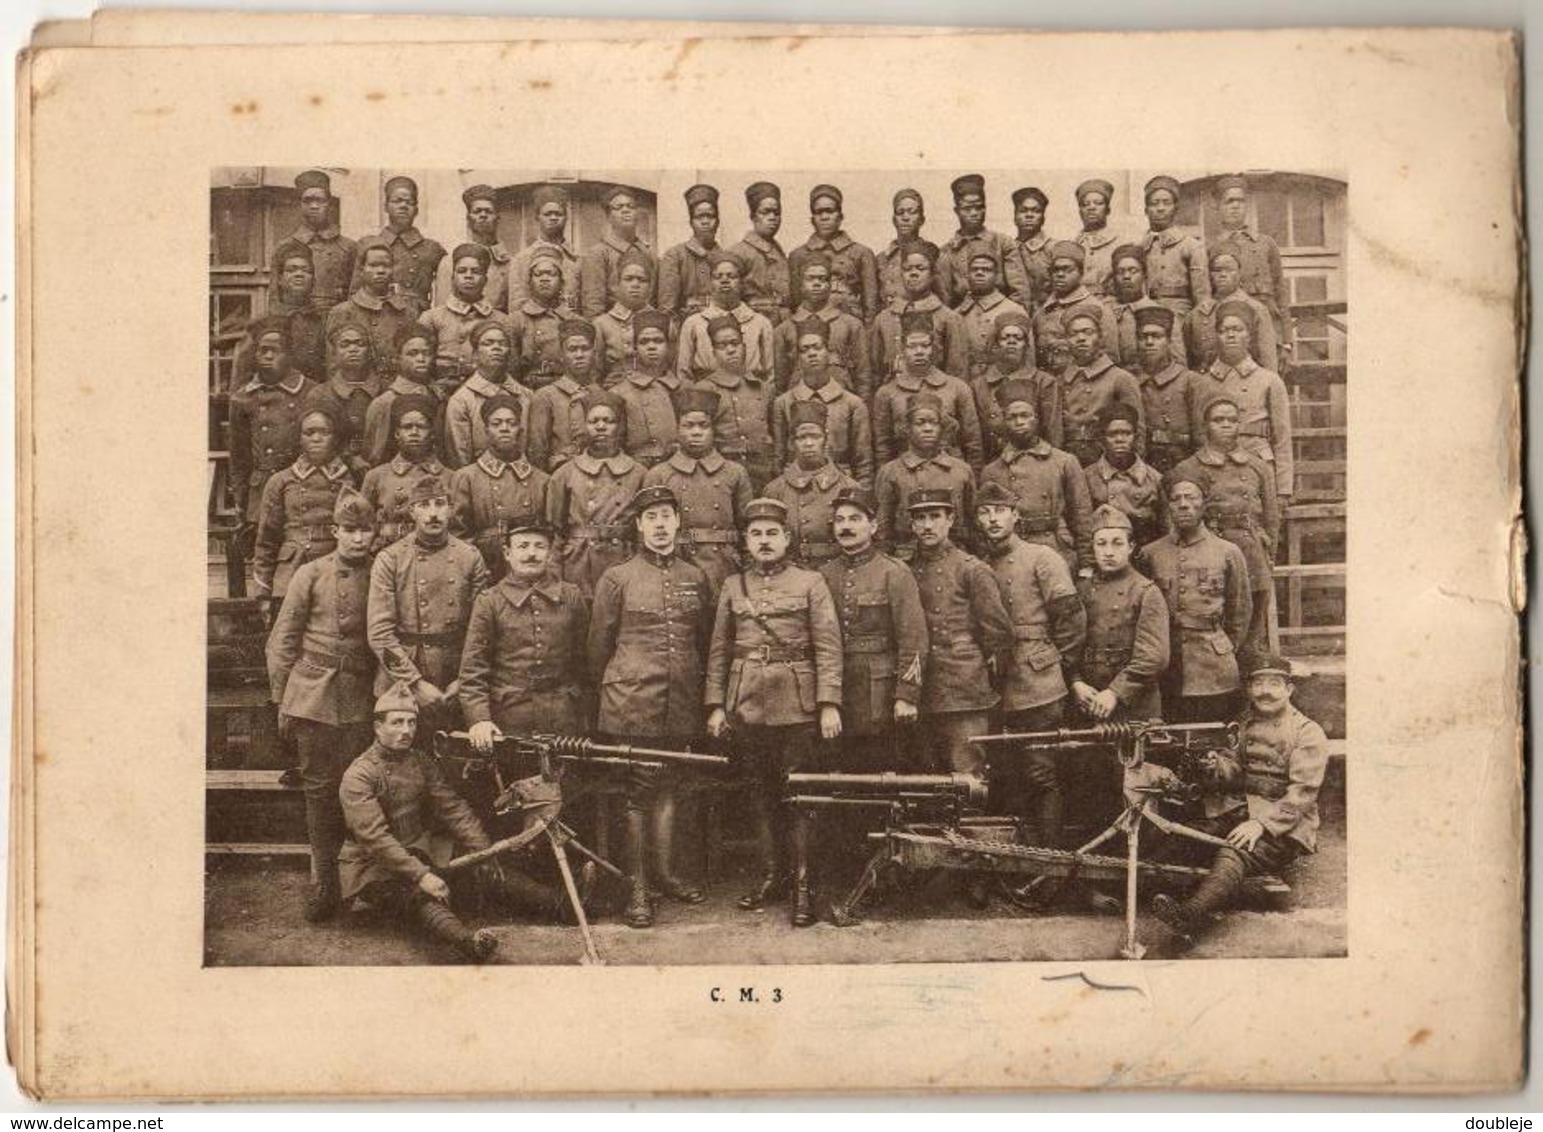 Rare Album Souvenir 8e RIC Régiment d'Infanterie Coloniale - Toulon  1921 - Militaria européens indigènes 20 vues